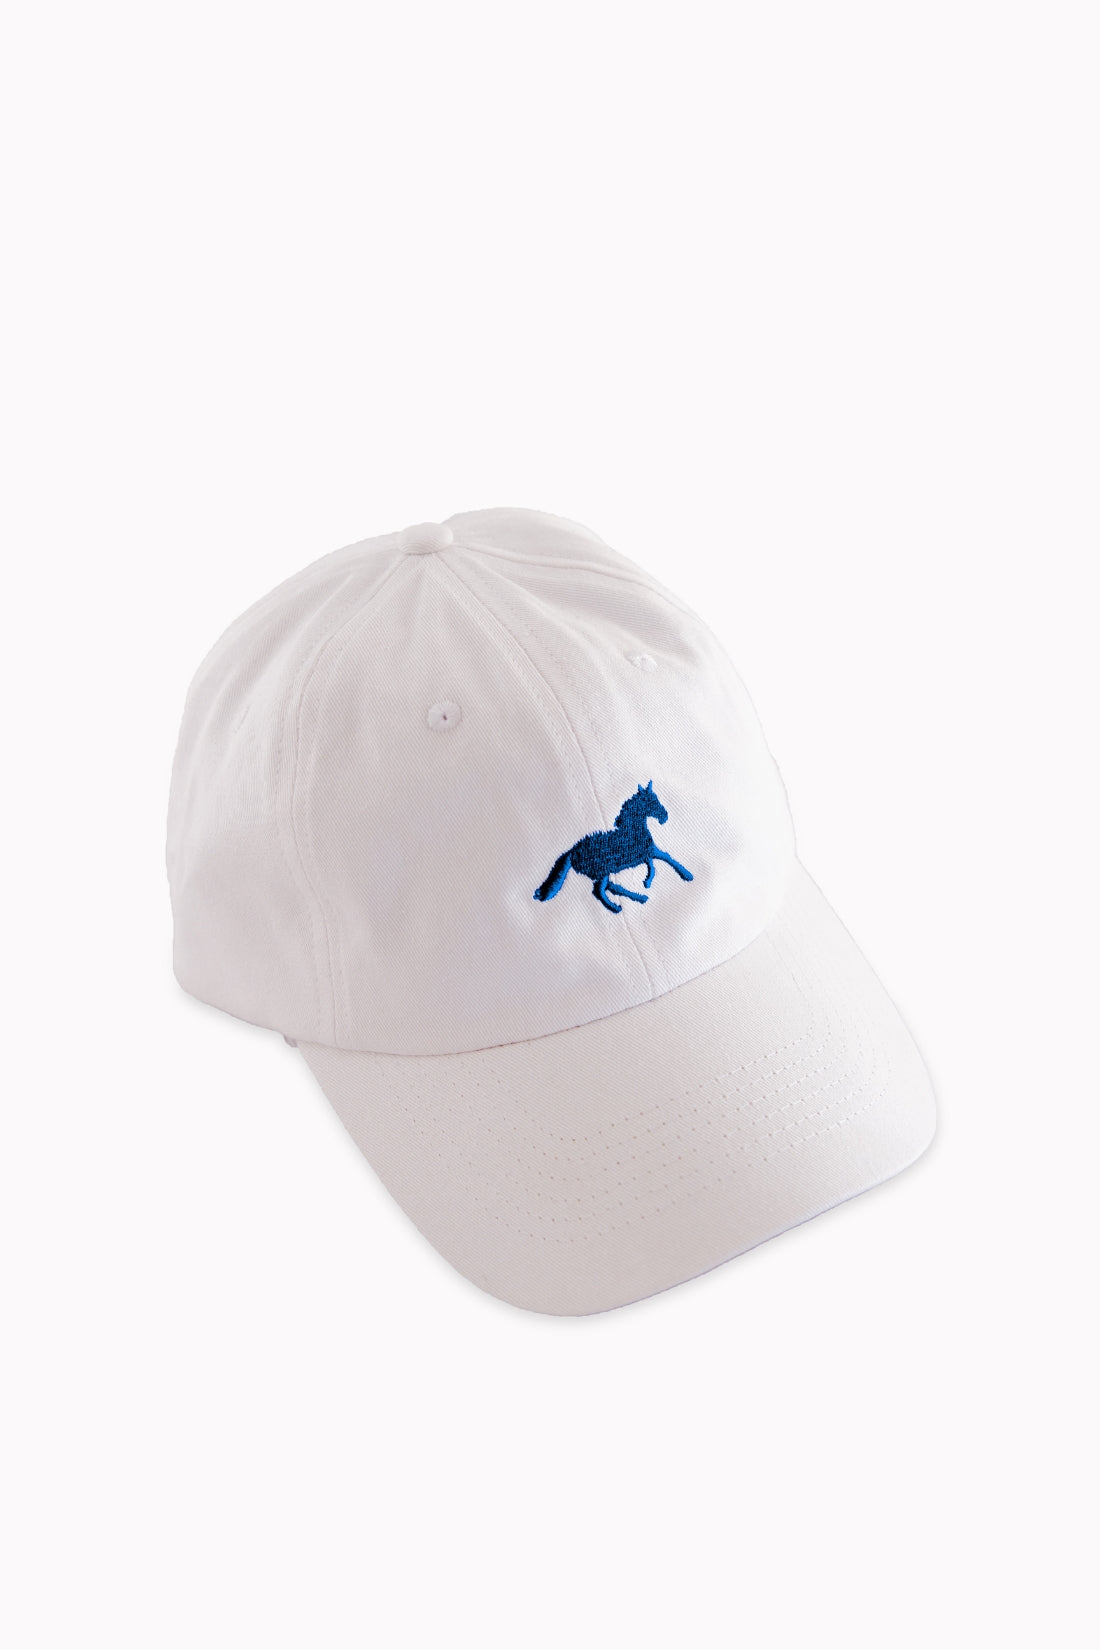 Horse Girl Cap | White/Blue